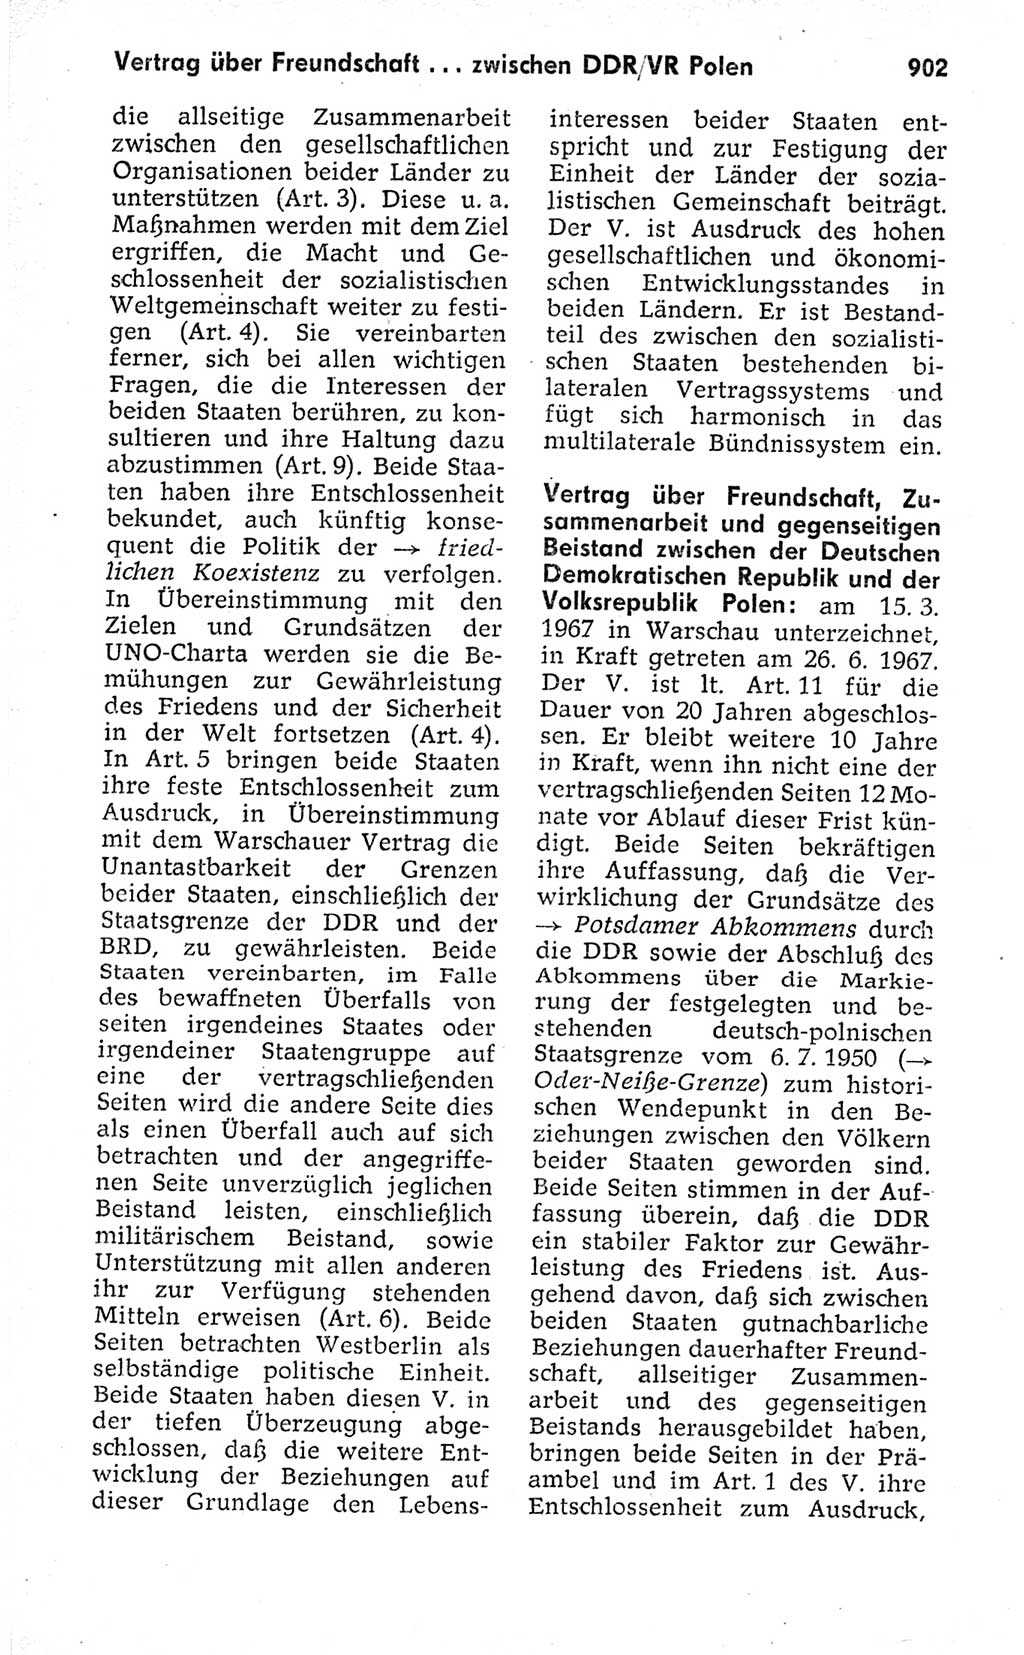 Kleines politisches Wörterbuch [Deutsche Demokratische Republik (DDR)] 1973, Seite 902 (Kl. pol. Wb. DDR 1973, S. 902)